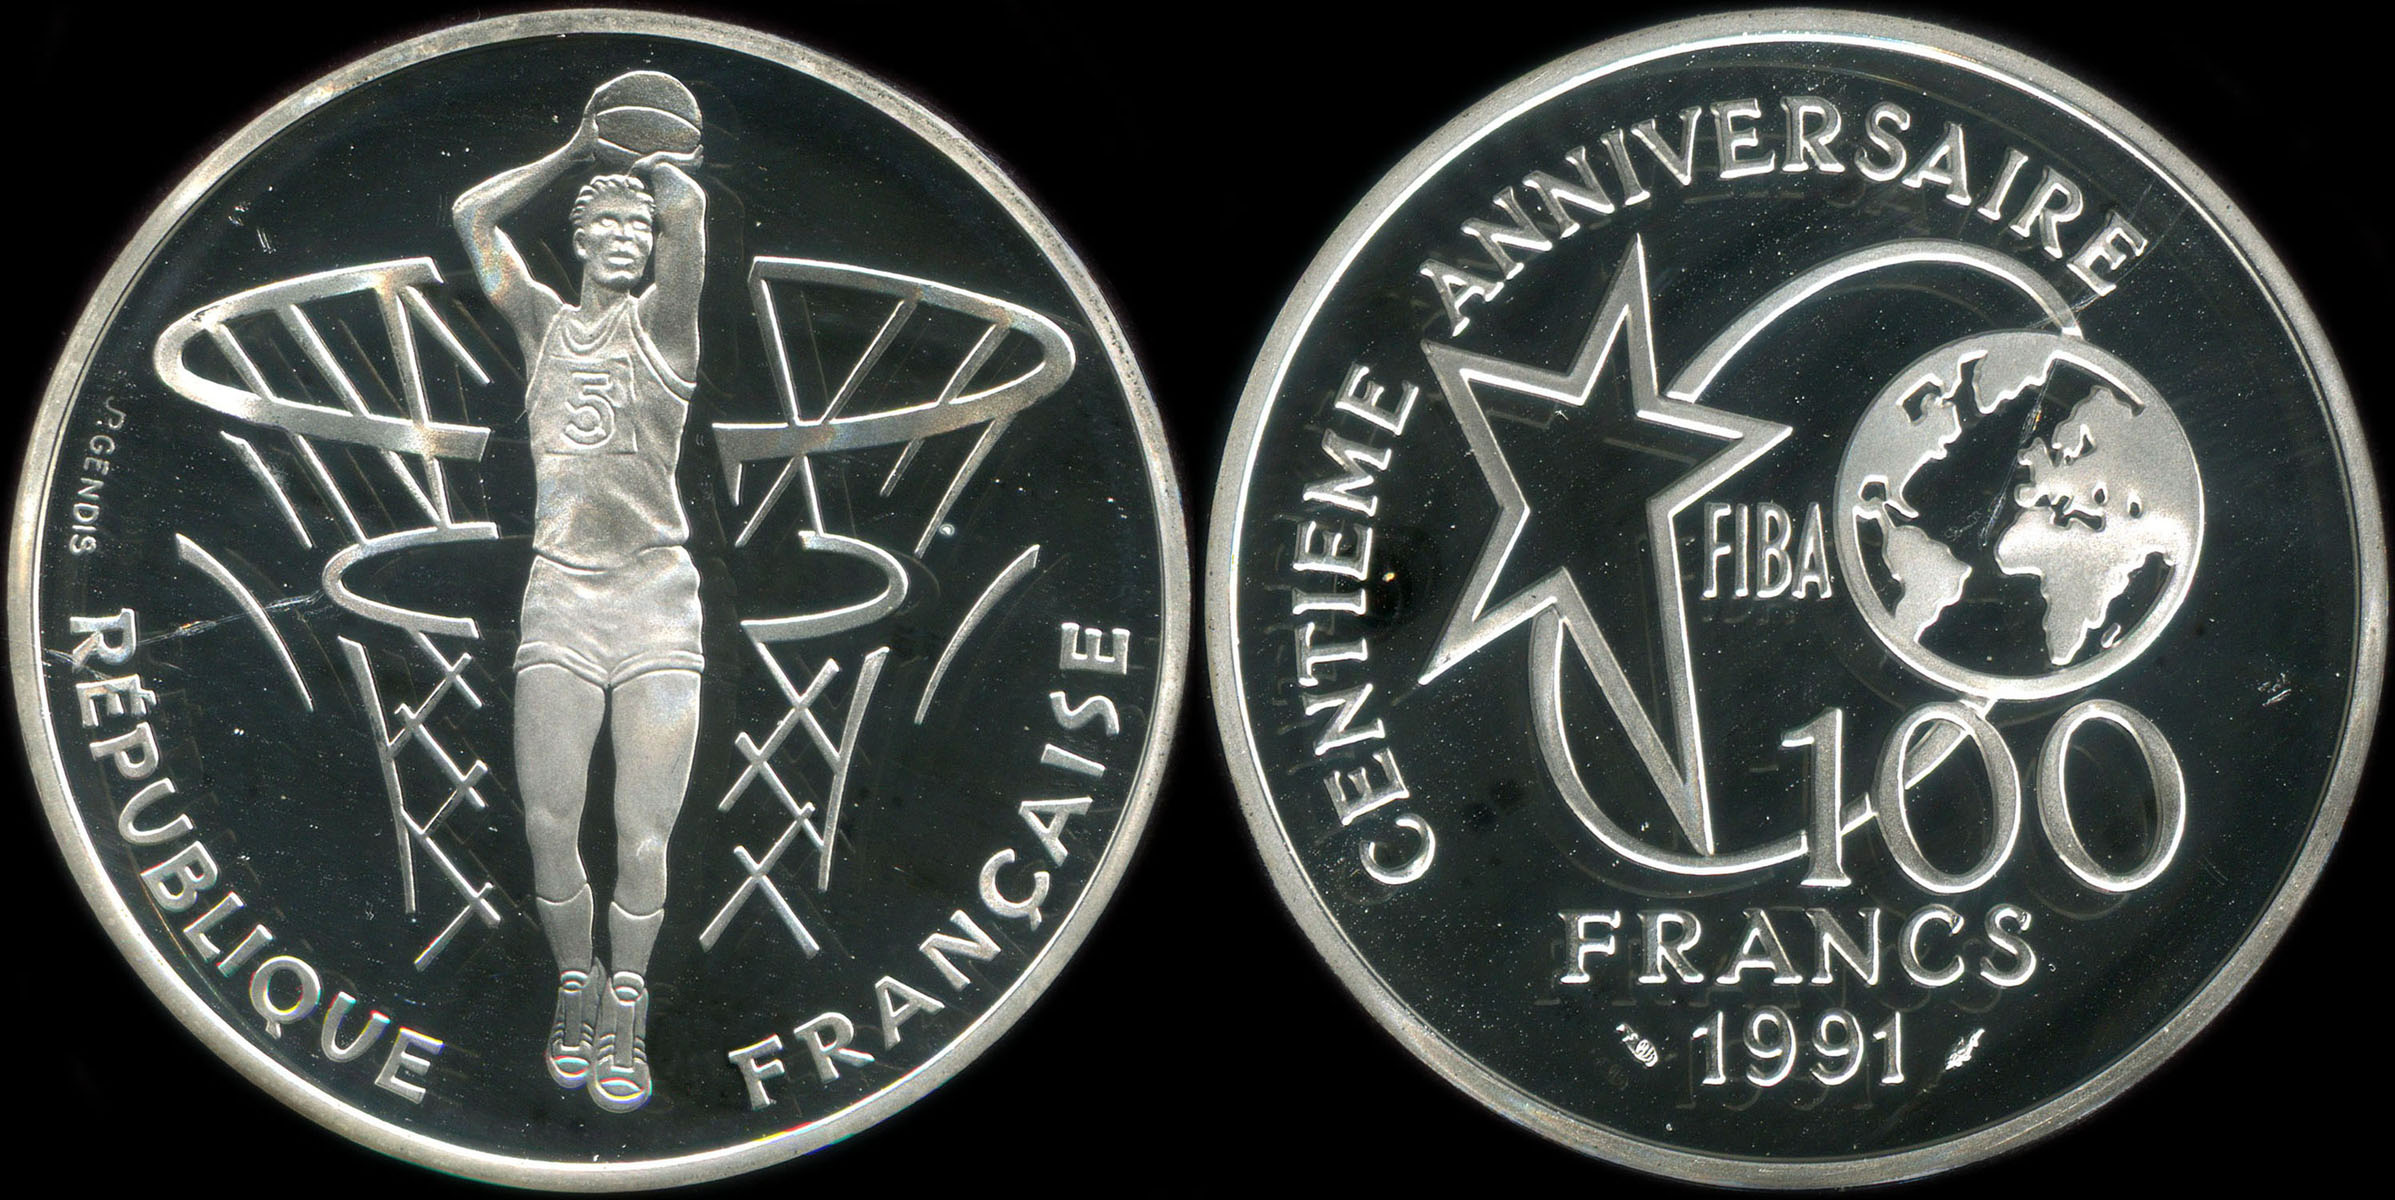 Pice de 100 francs 1991 - Centenaire du Basket-Ball 1891-1991 - Fiba - Lancer franc